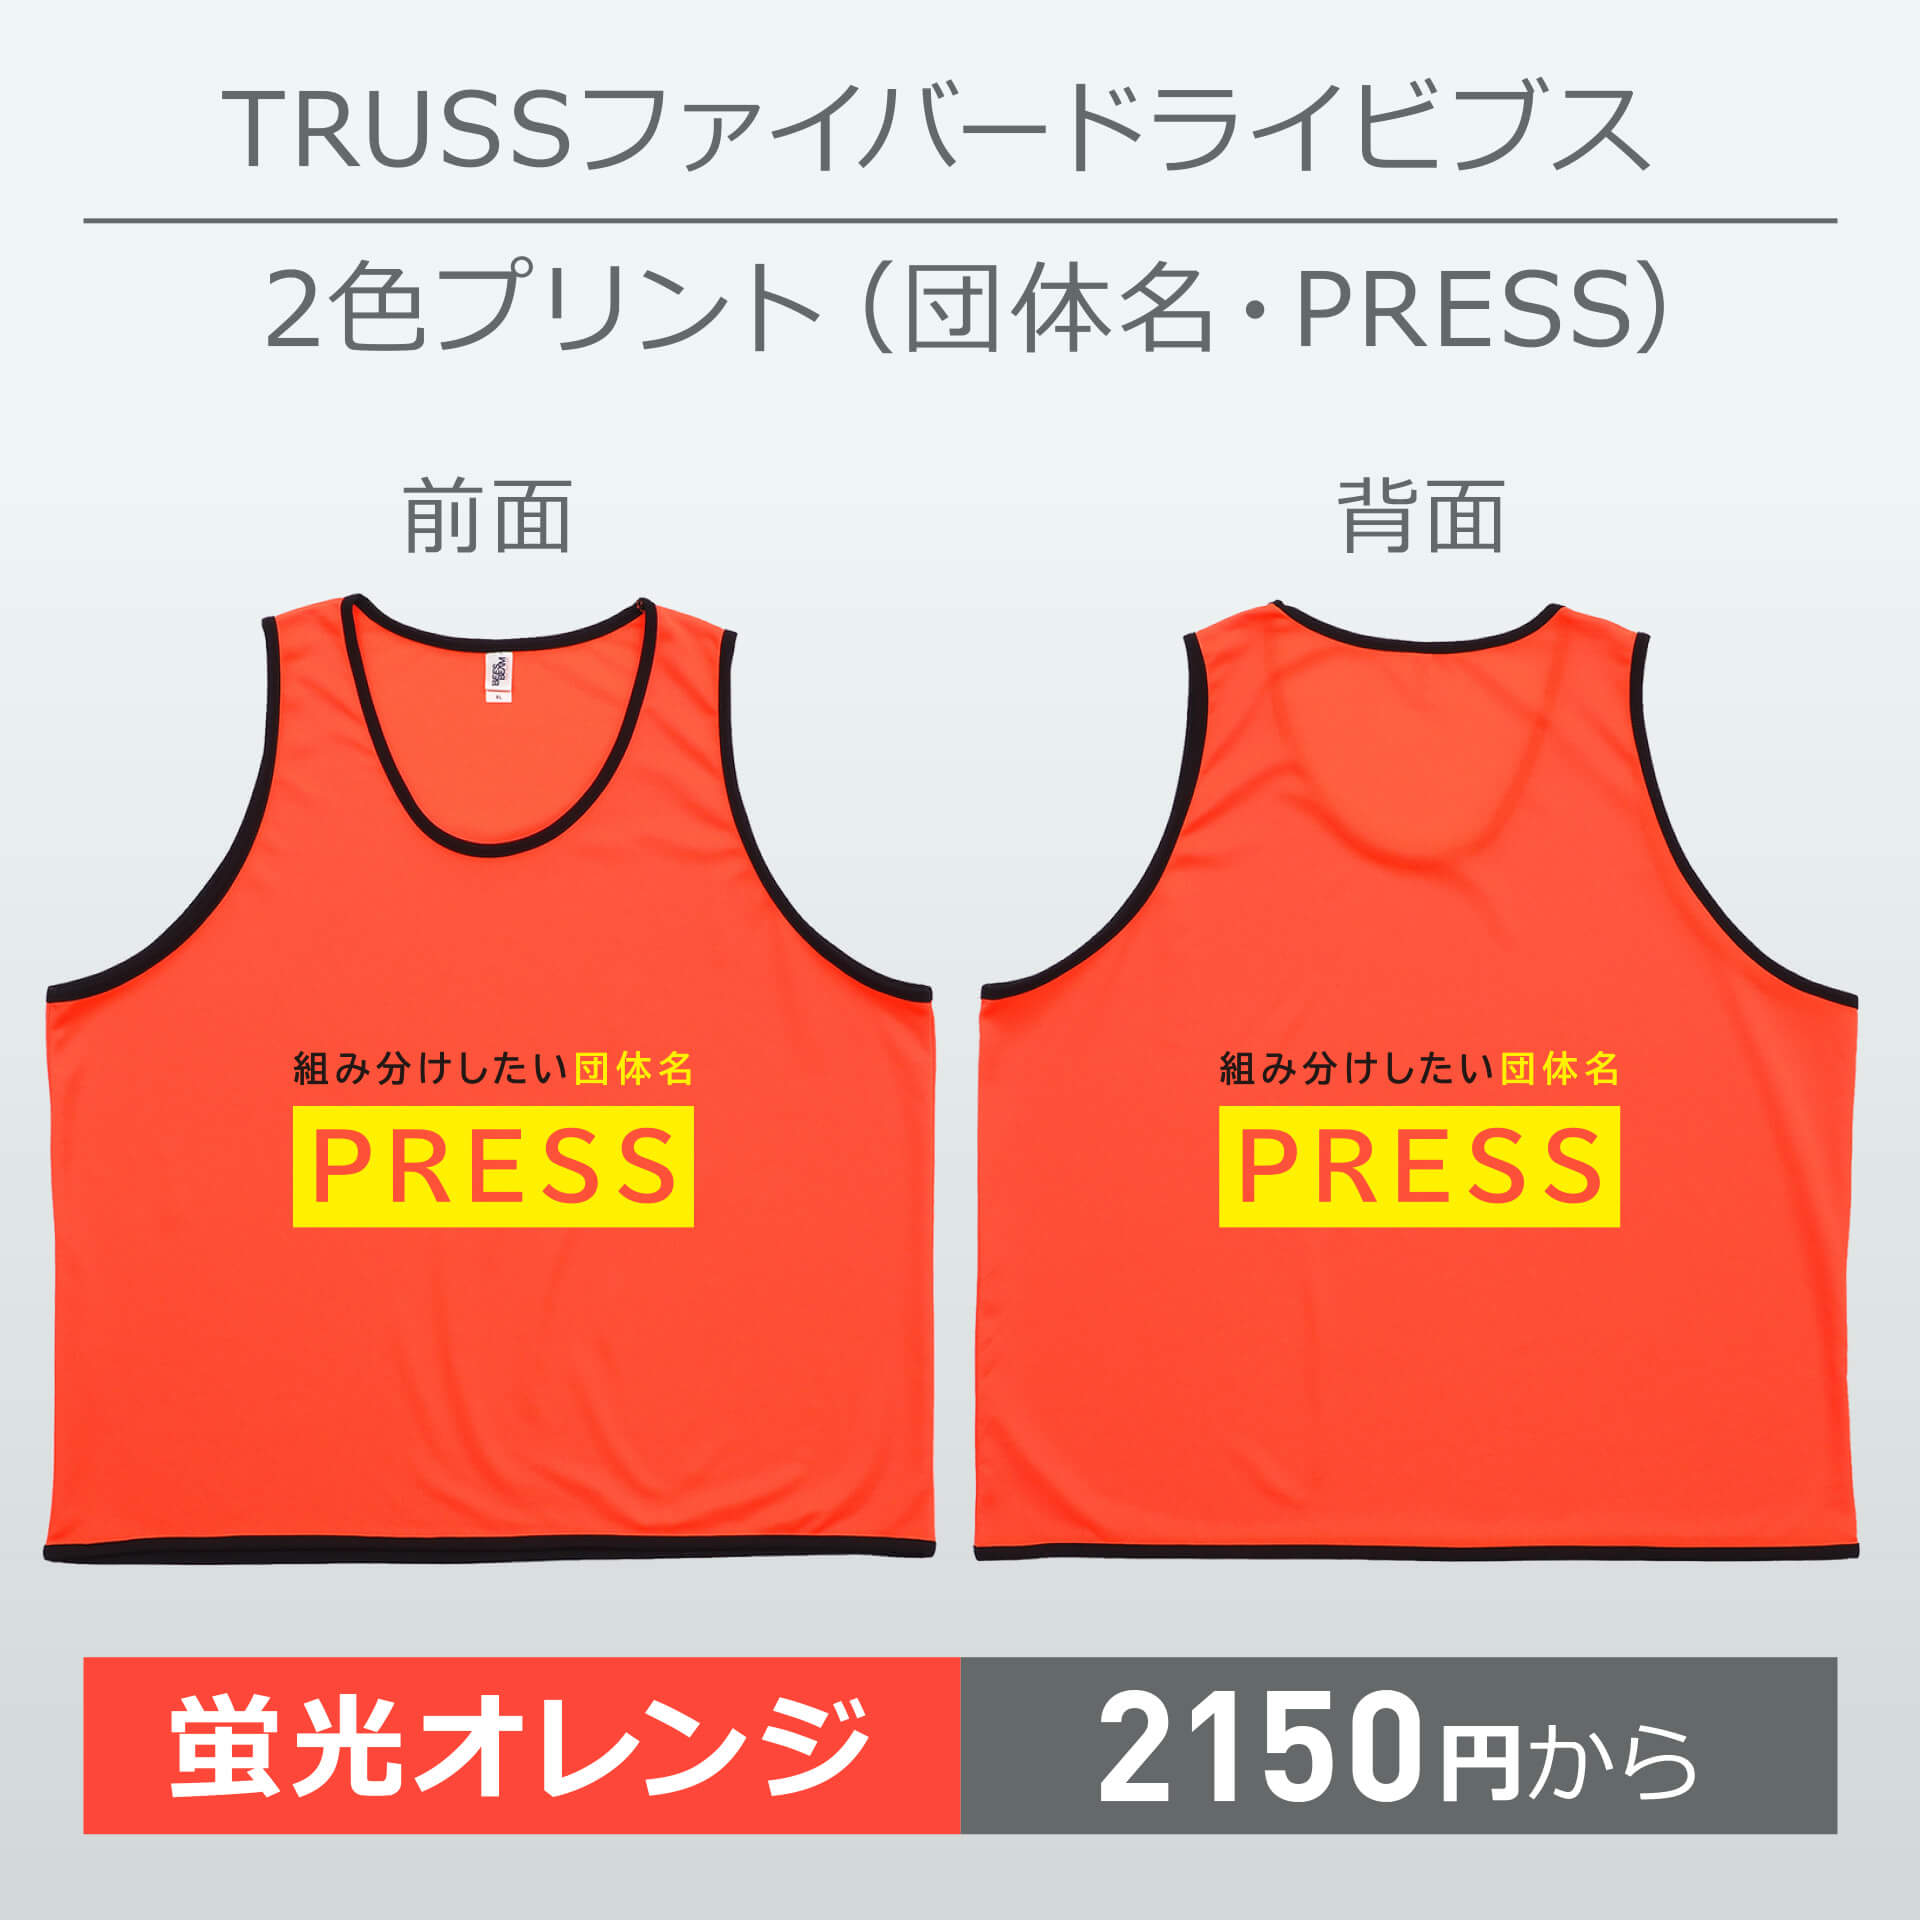 トラス・ファイバードライビブス・2色プリント(団体名・PRESS)・蛍光オレンジ